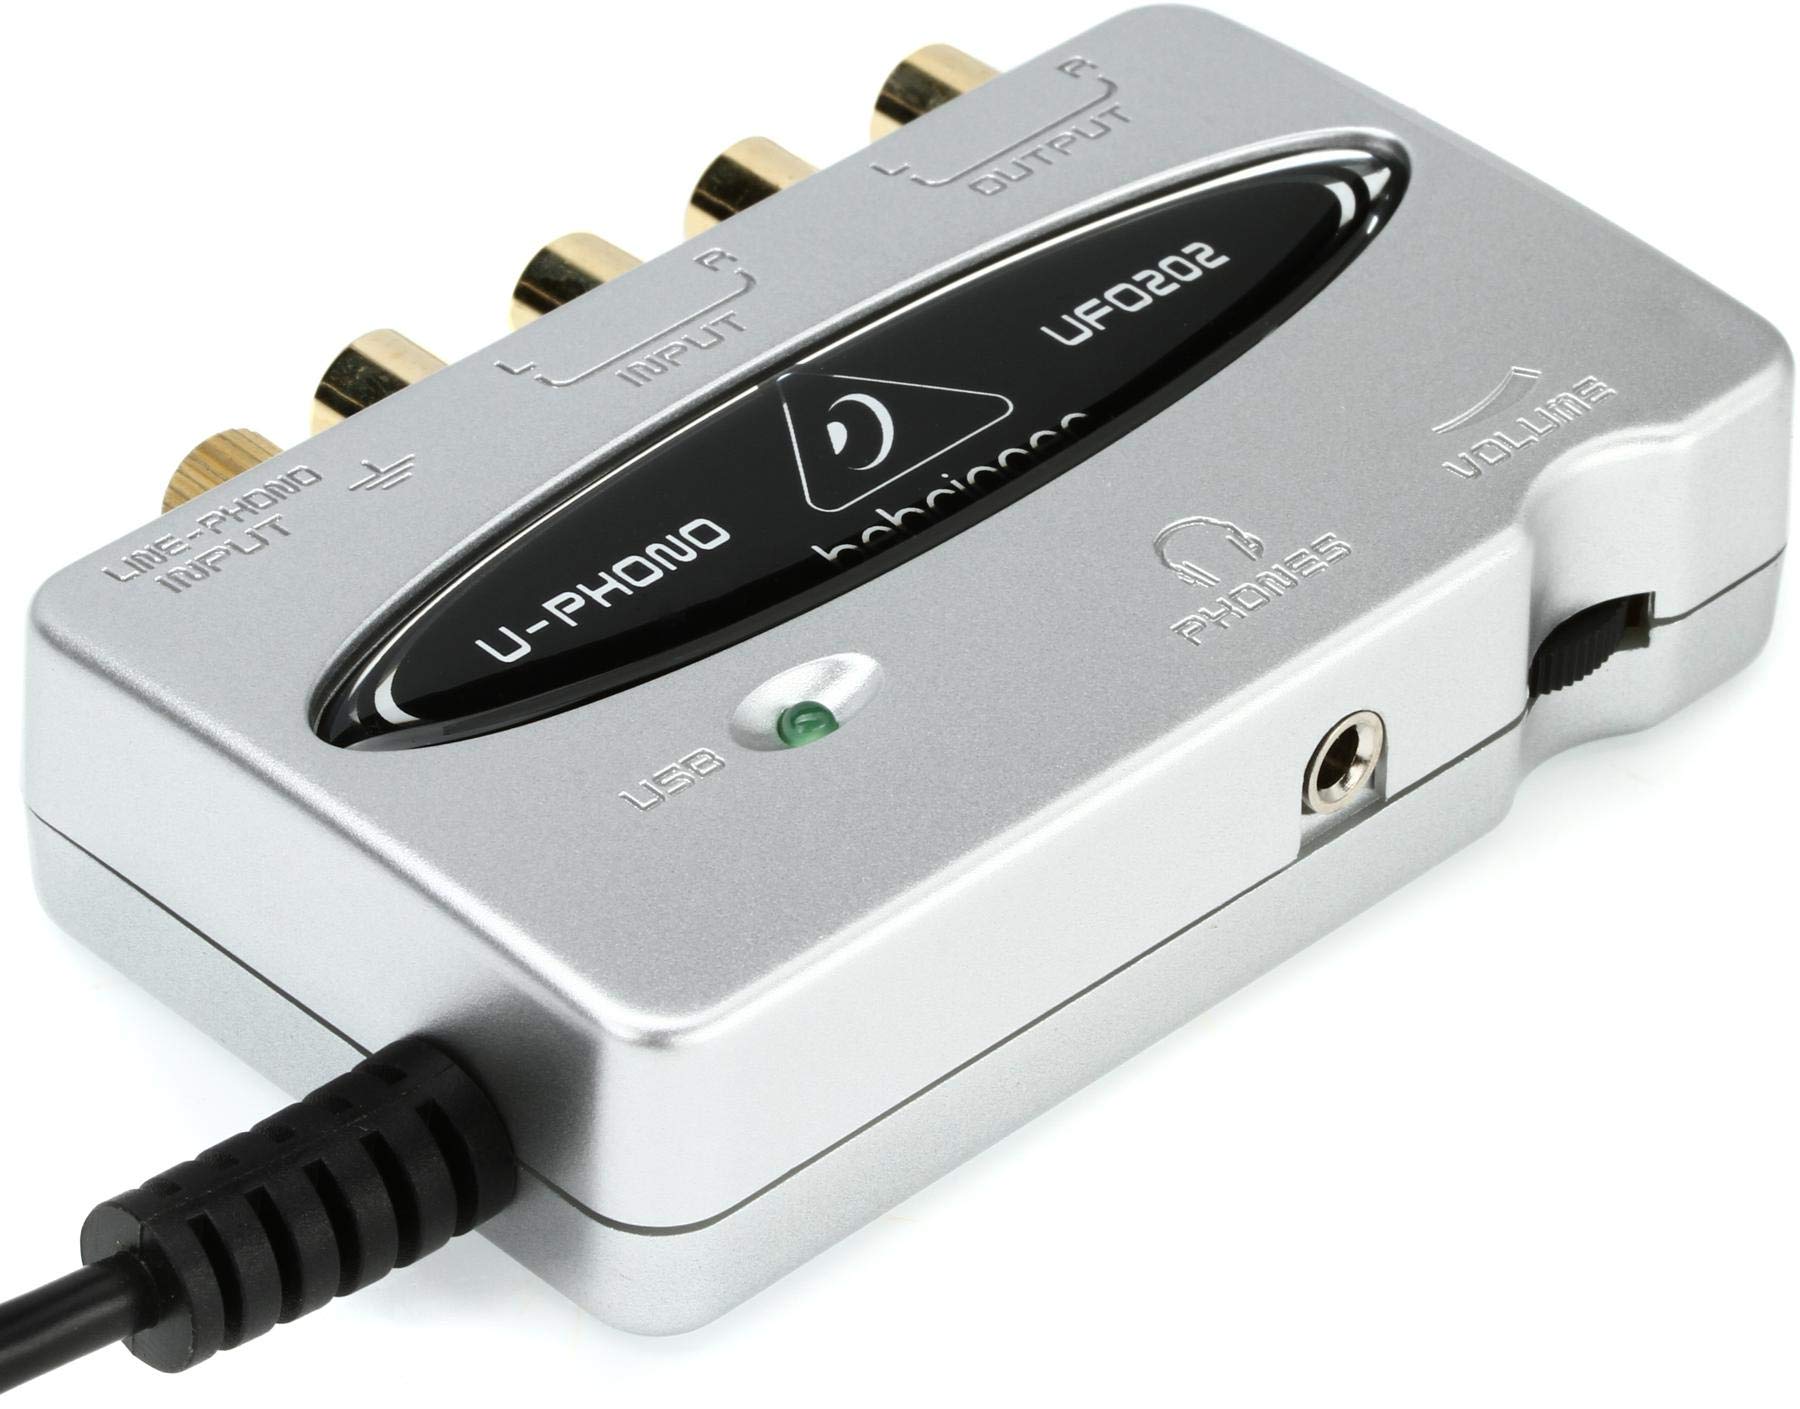 Classique Behringer UFO202 Interface USB/Audio Audiophile avec Préampli Phono Intégré pour Numériser vos Bandes et Disques Vinyles, Compatible PC et Mac ONnXb0lqj pas cher